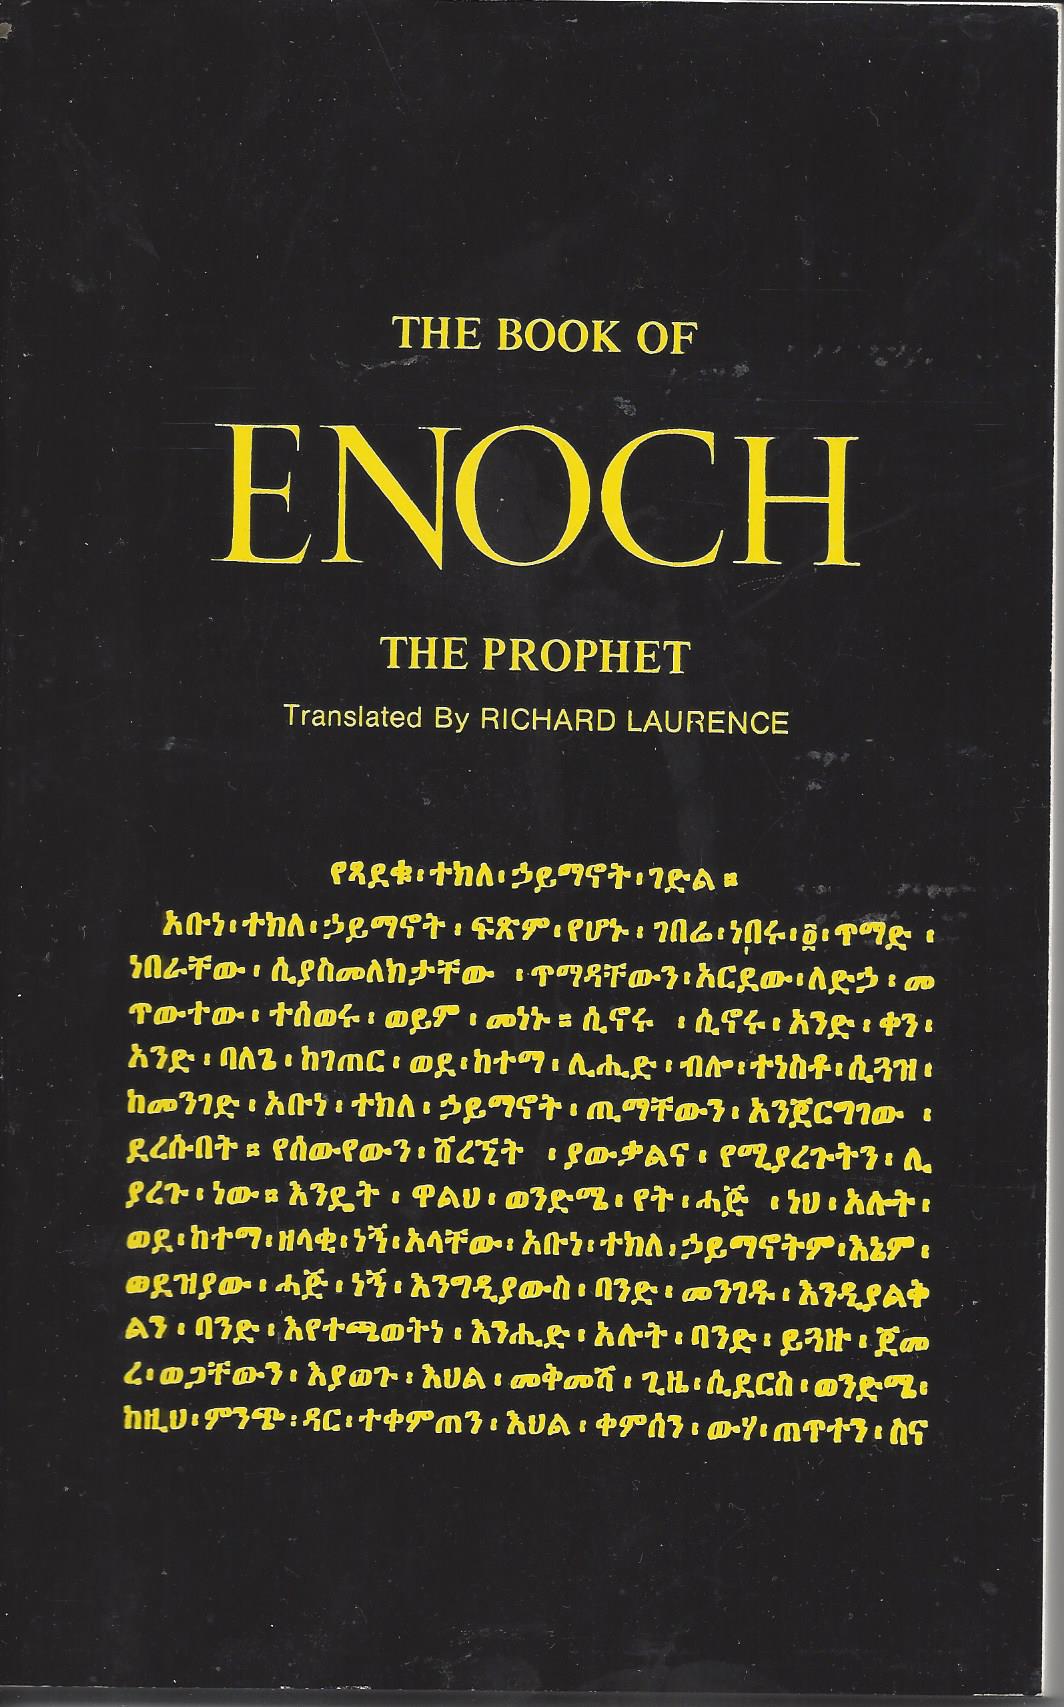 audio book of enoch